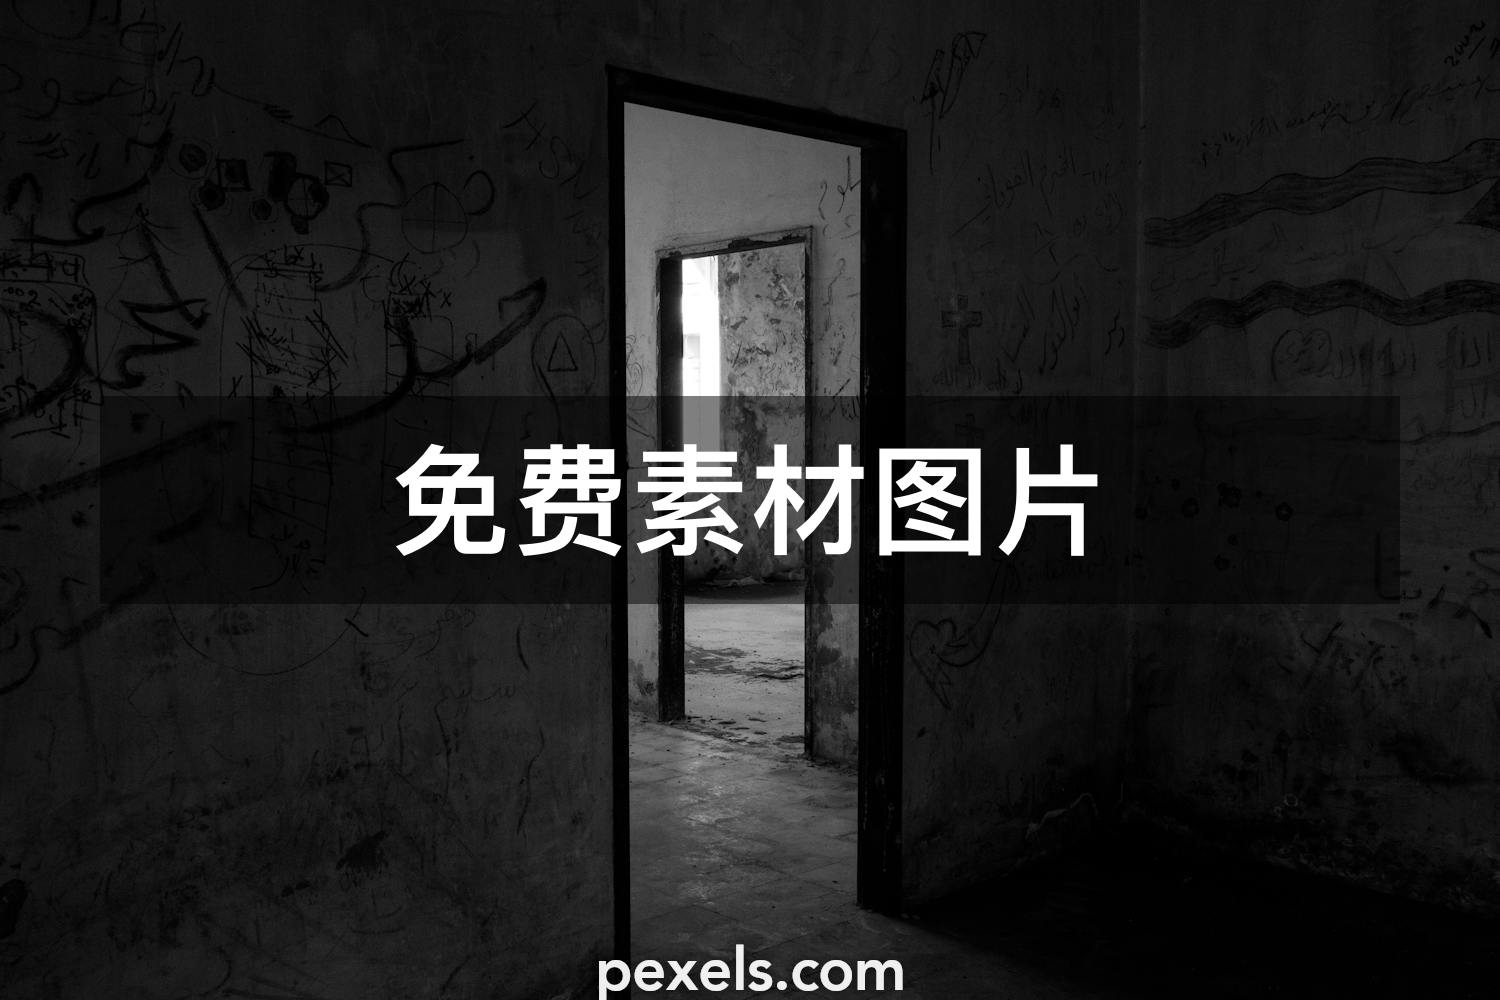 必应美图：闹鬼的荒墓 2016年10月31日 - 必应壁纸 - 中文搜索引擎指南网